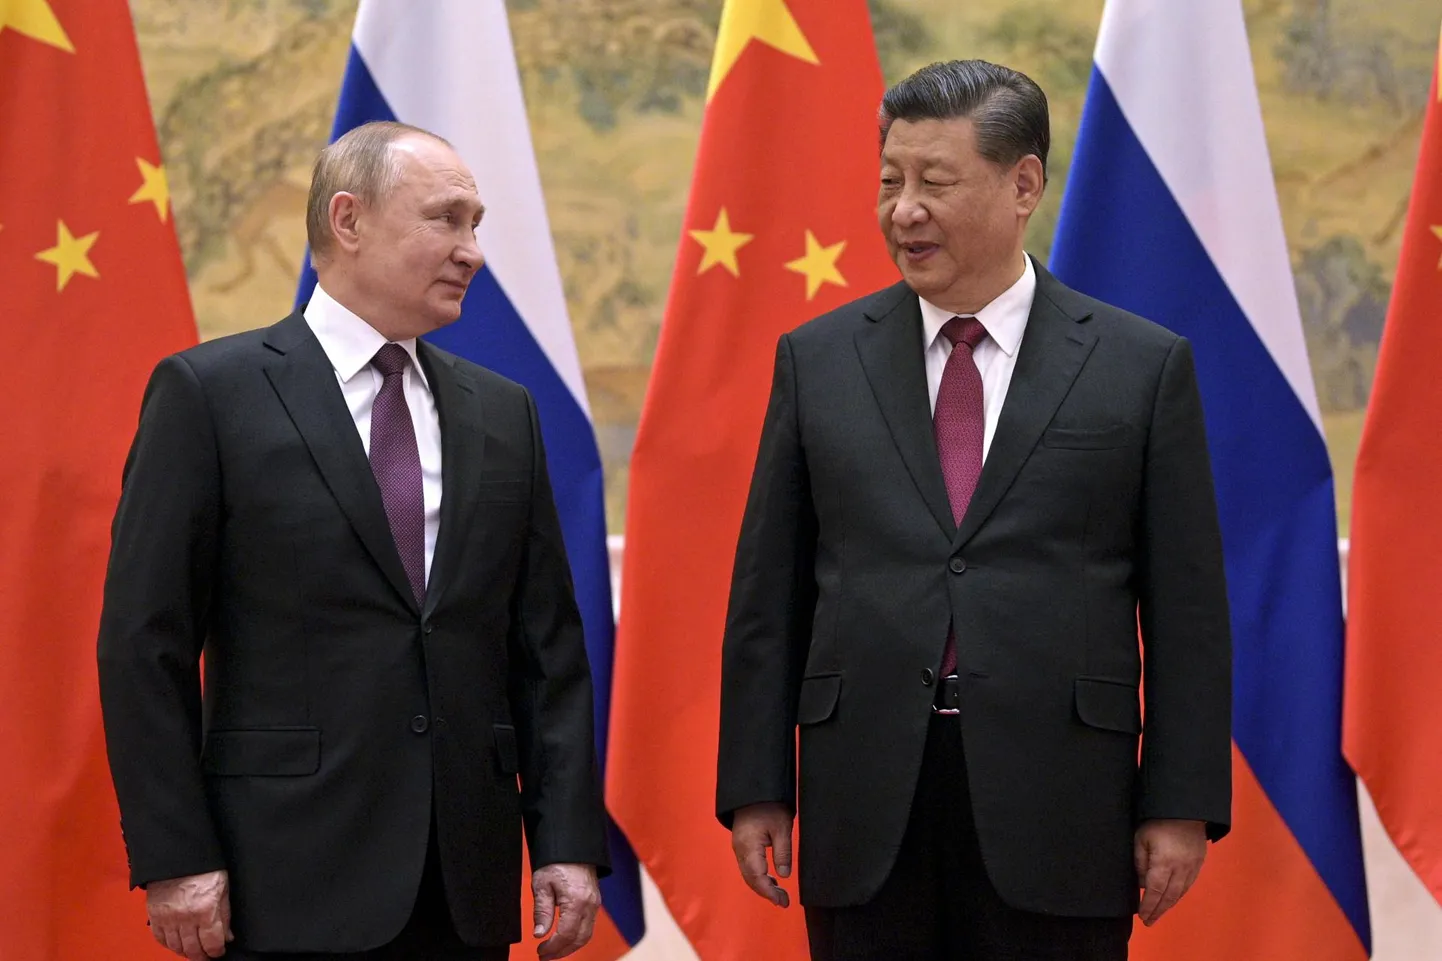 Sõbralikes suhetes Hiina president Xi Jinping ja Venemaa president Vladimir Putin. Vene-Ukraina sõjas on Hiina valinud Venemaa poole. Samamoodi kritiseerib Hiina üha jõulisemalt Euroopa julgeolekuarhitektuuri.